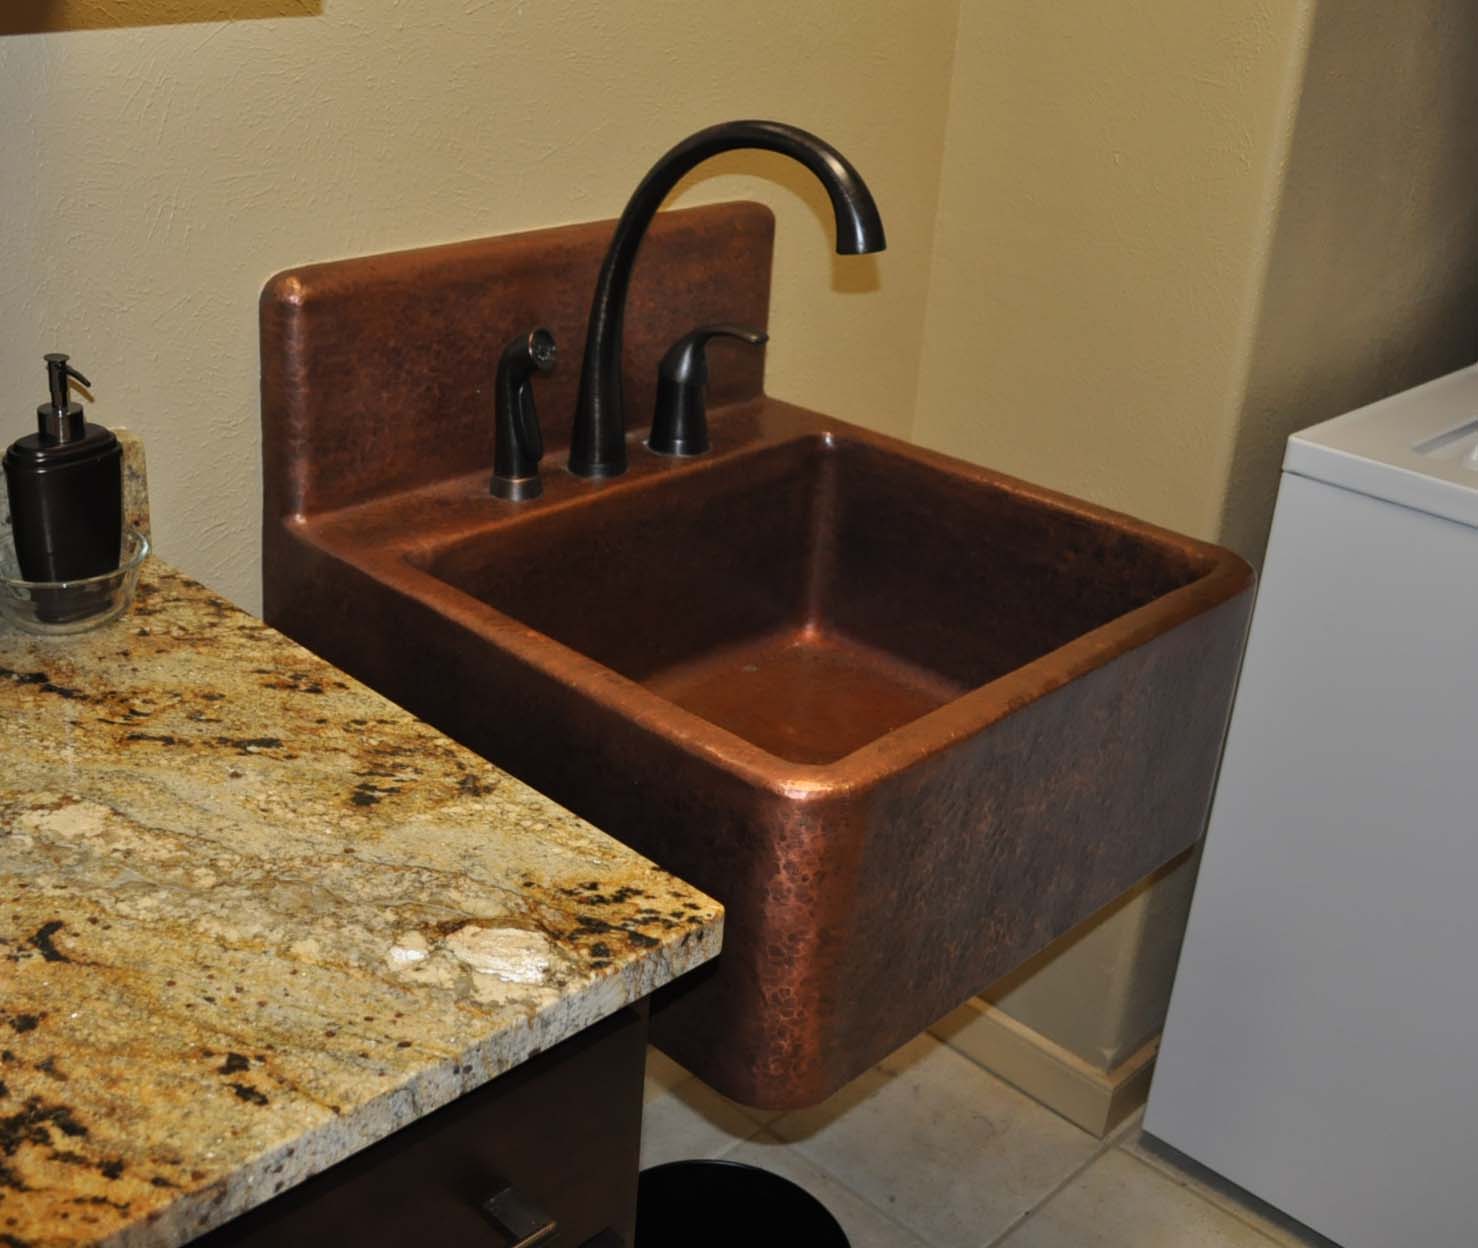 Kitchen Sink Backing Up Garbage Disposal Leaking Water